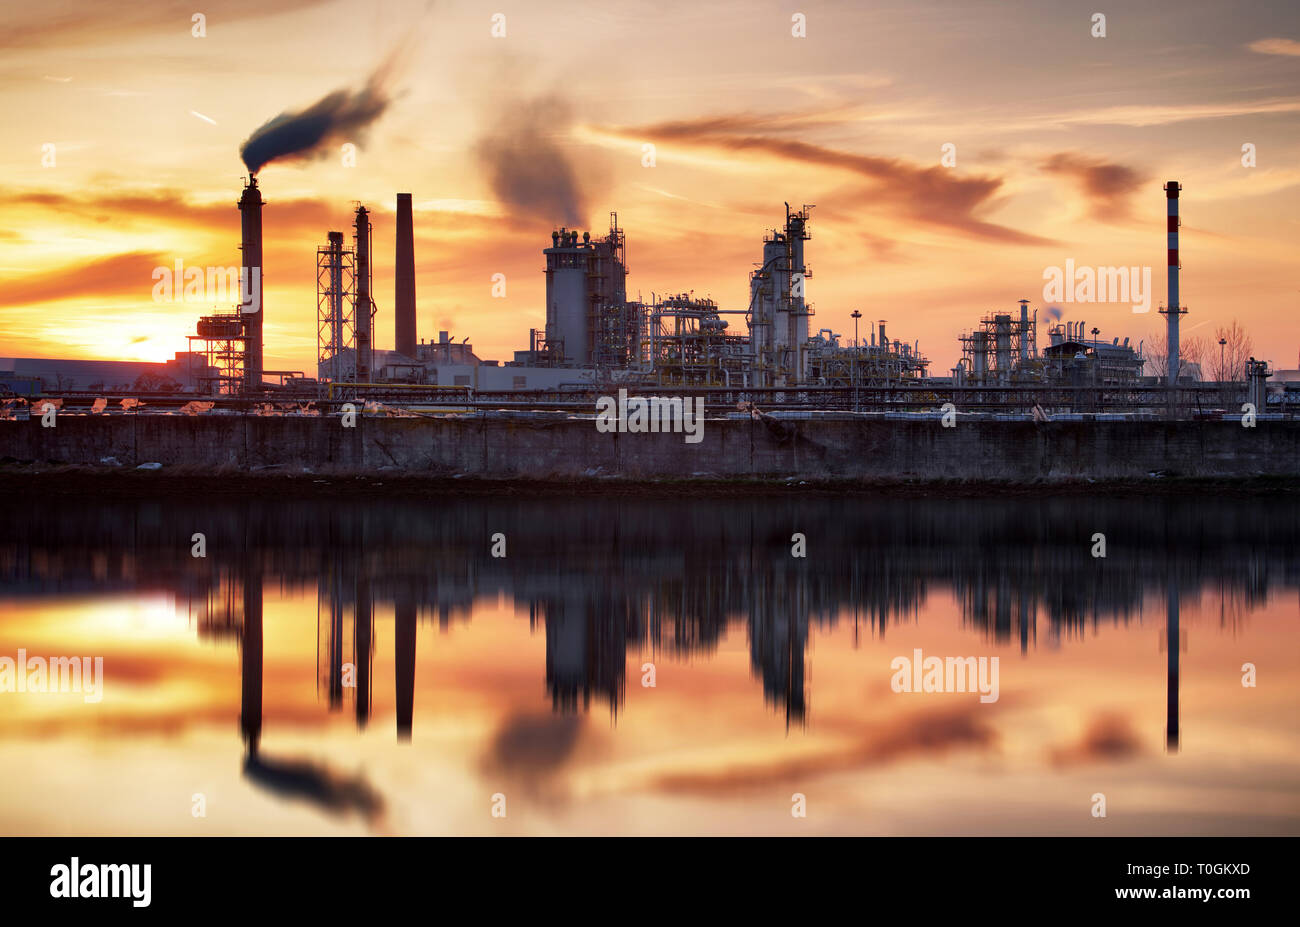 L'industrie de l'huile silhouette, Petrechemical - Raffinerie végétale Banque D'Images